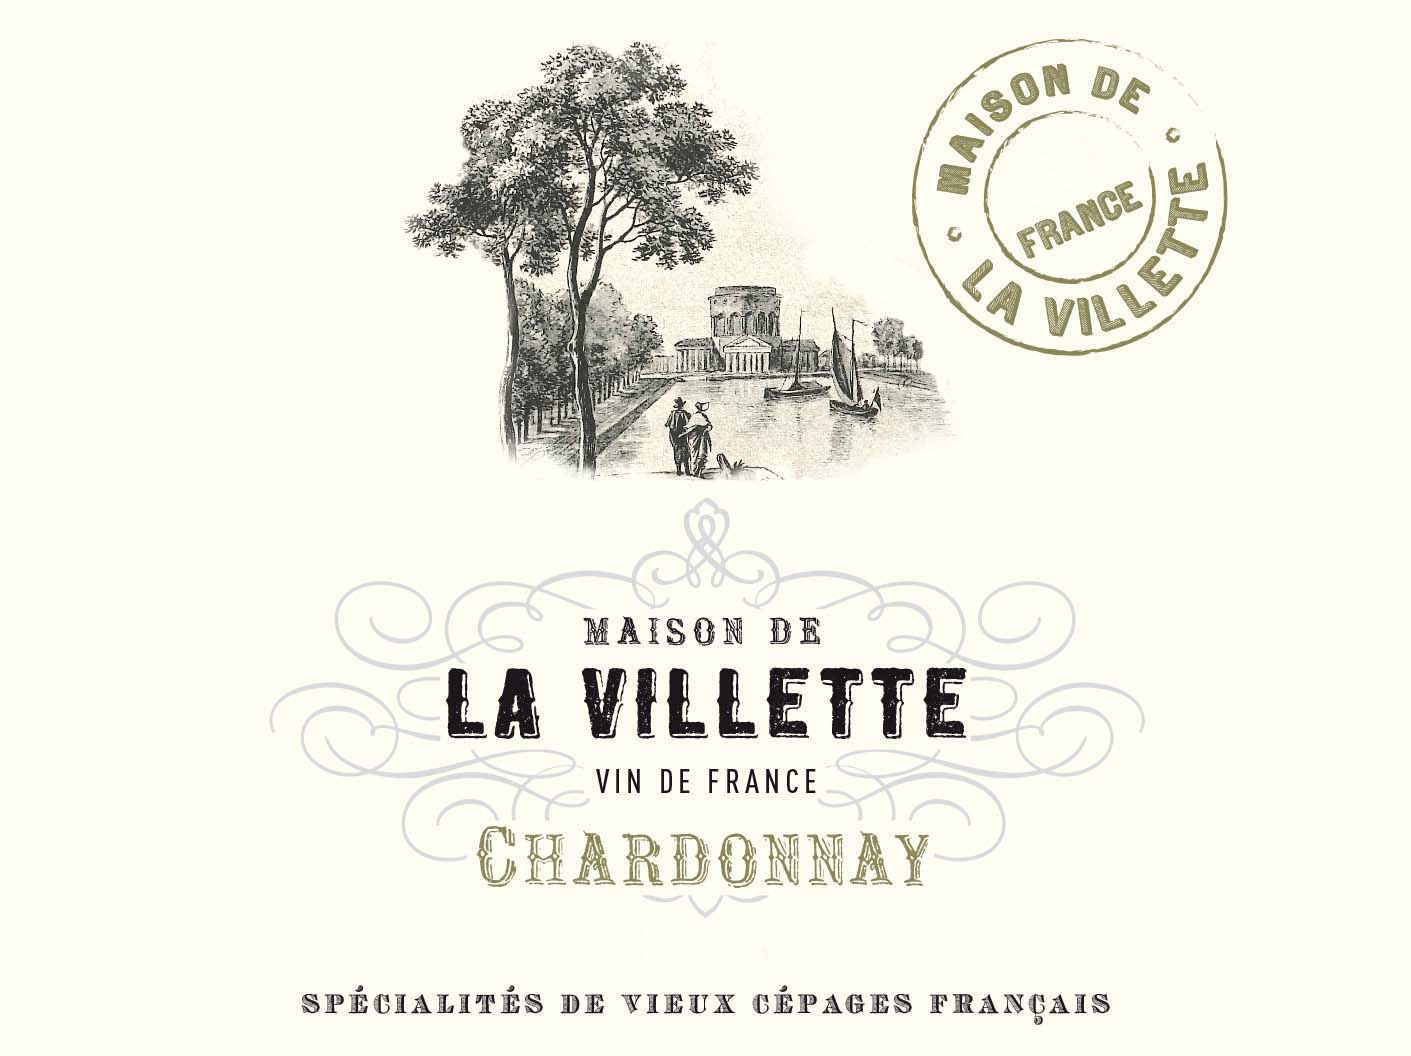 La Villette - Chardonnay label